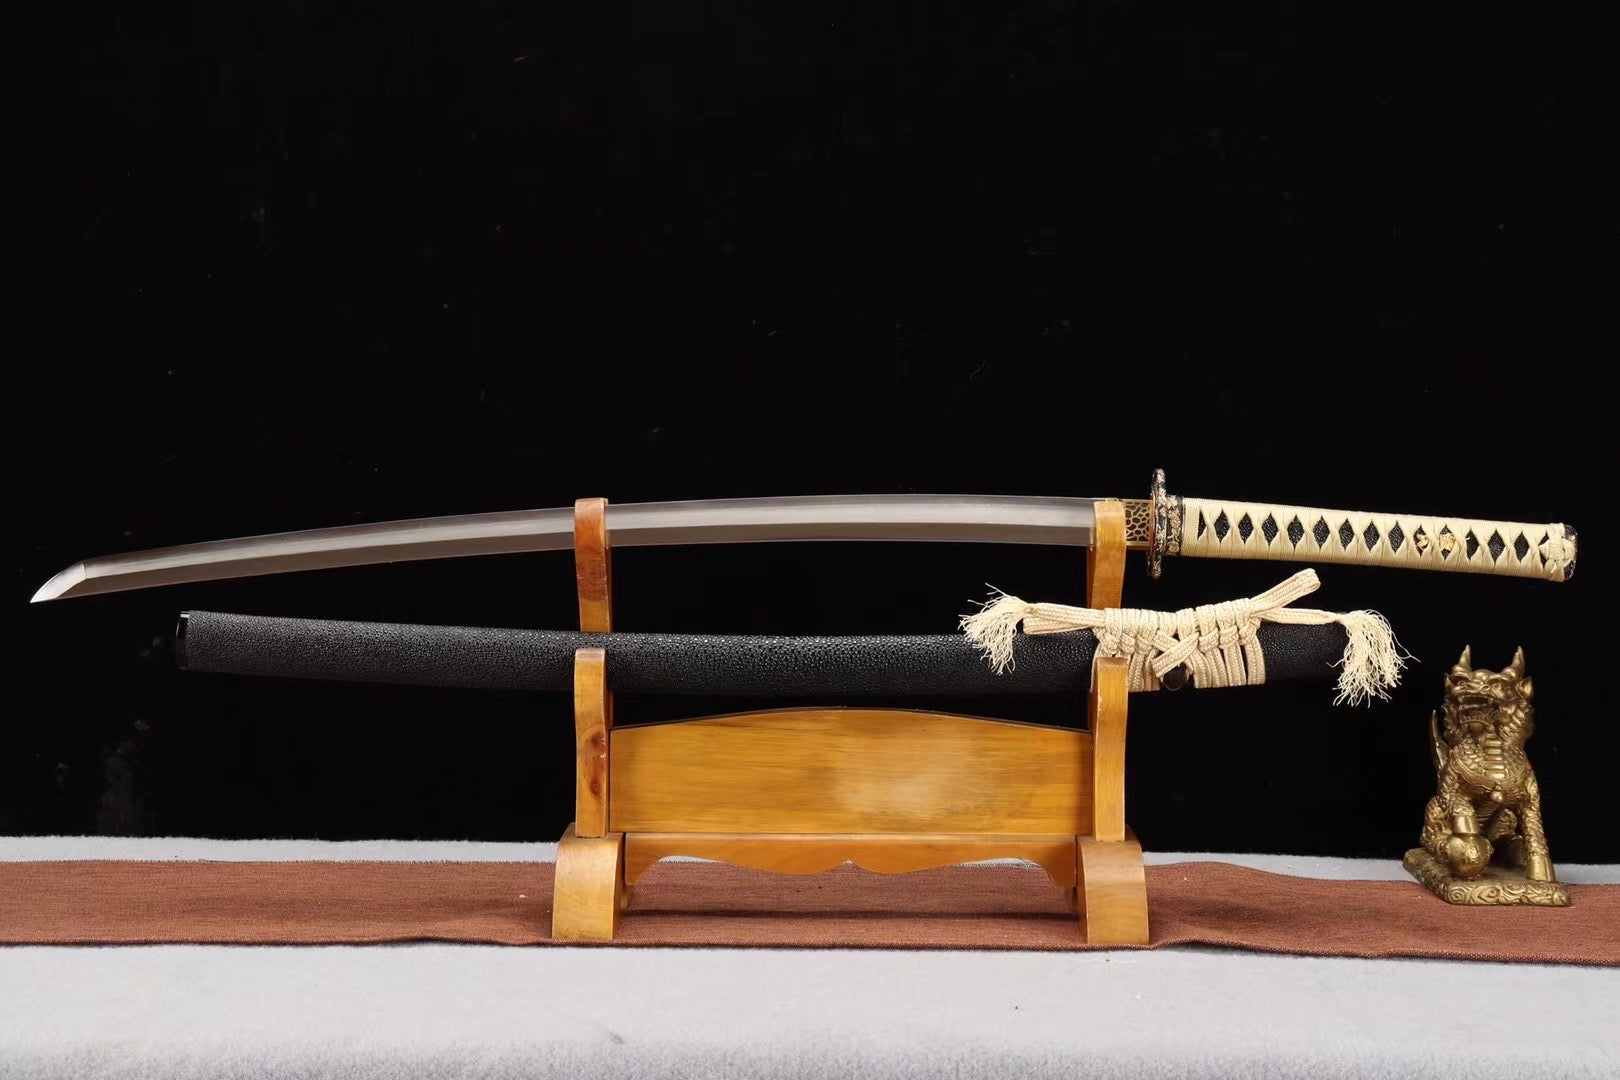 Folding Pattern Steel Clay Tempered With Hamon Golden Flower Katana Sword Handmade Japanese Samurai Sword Full Tang